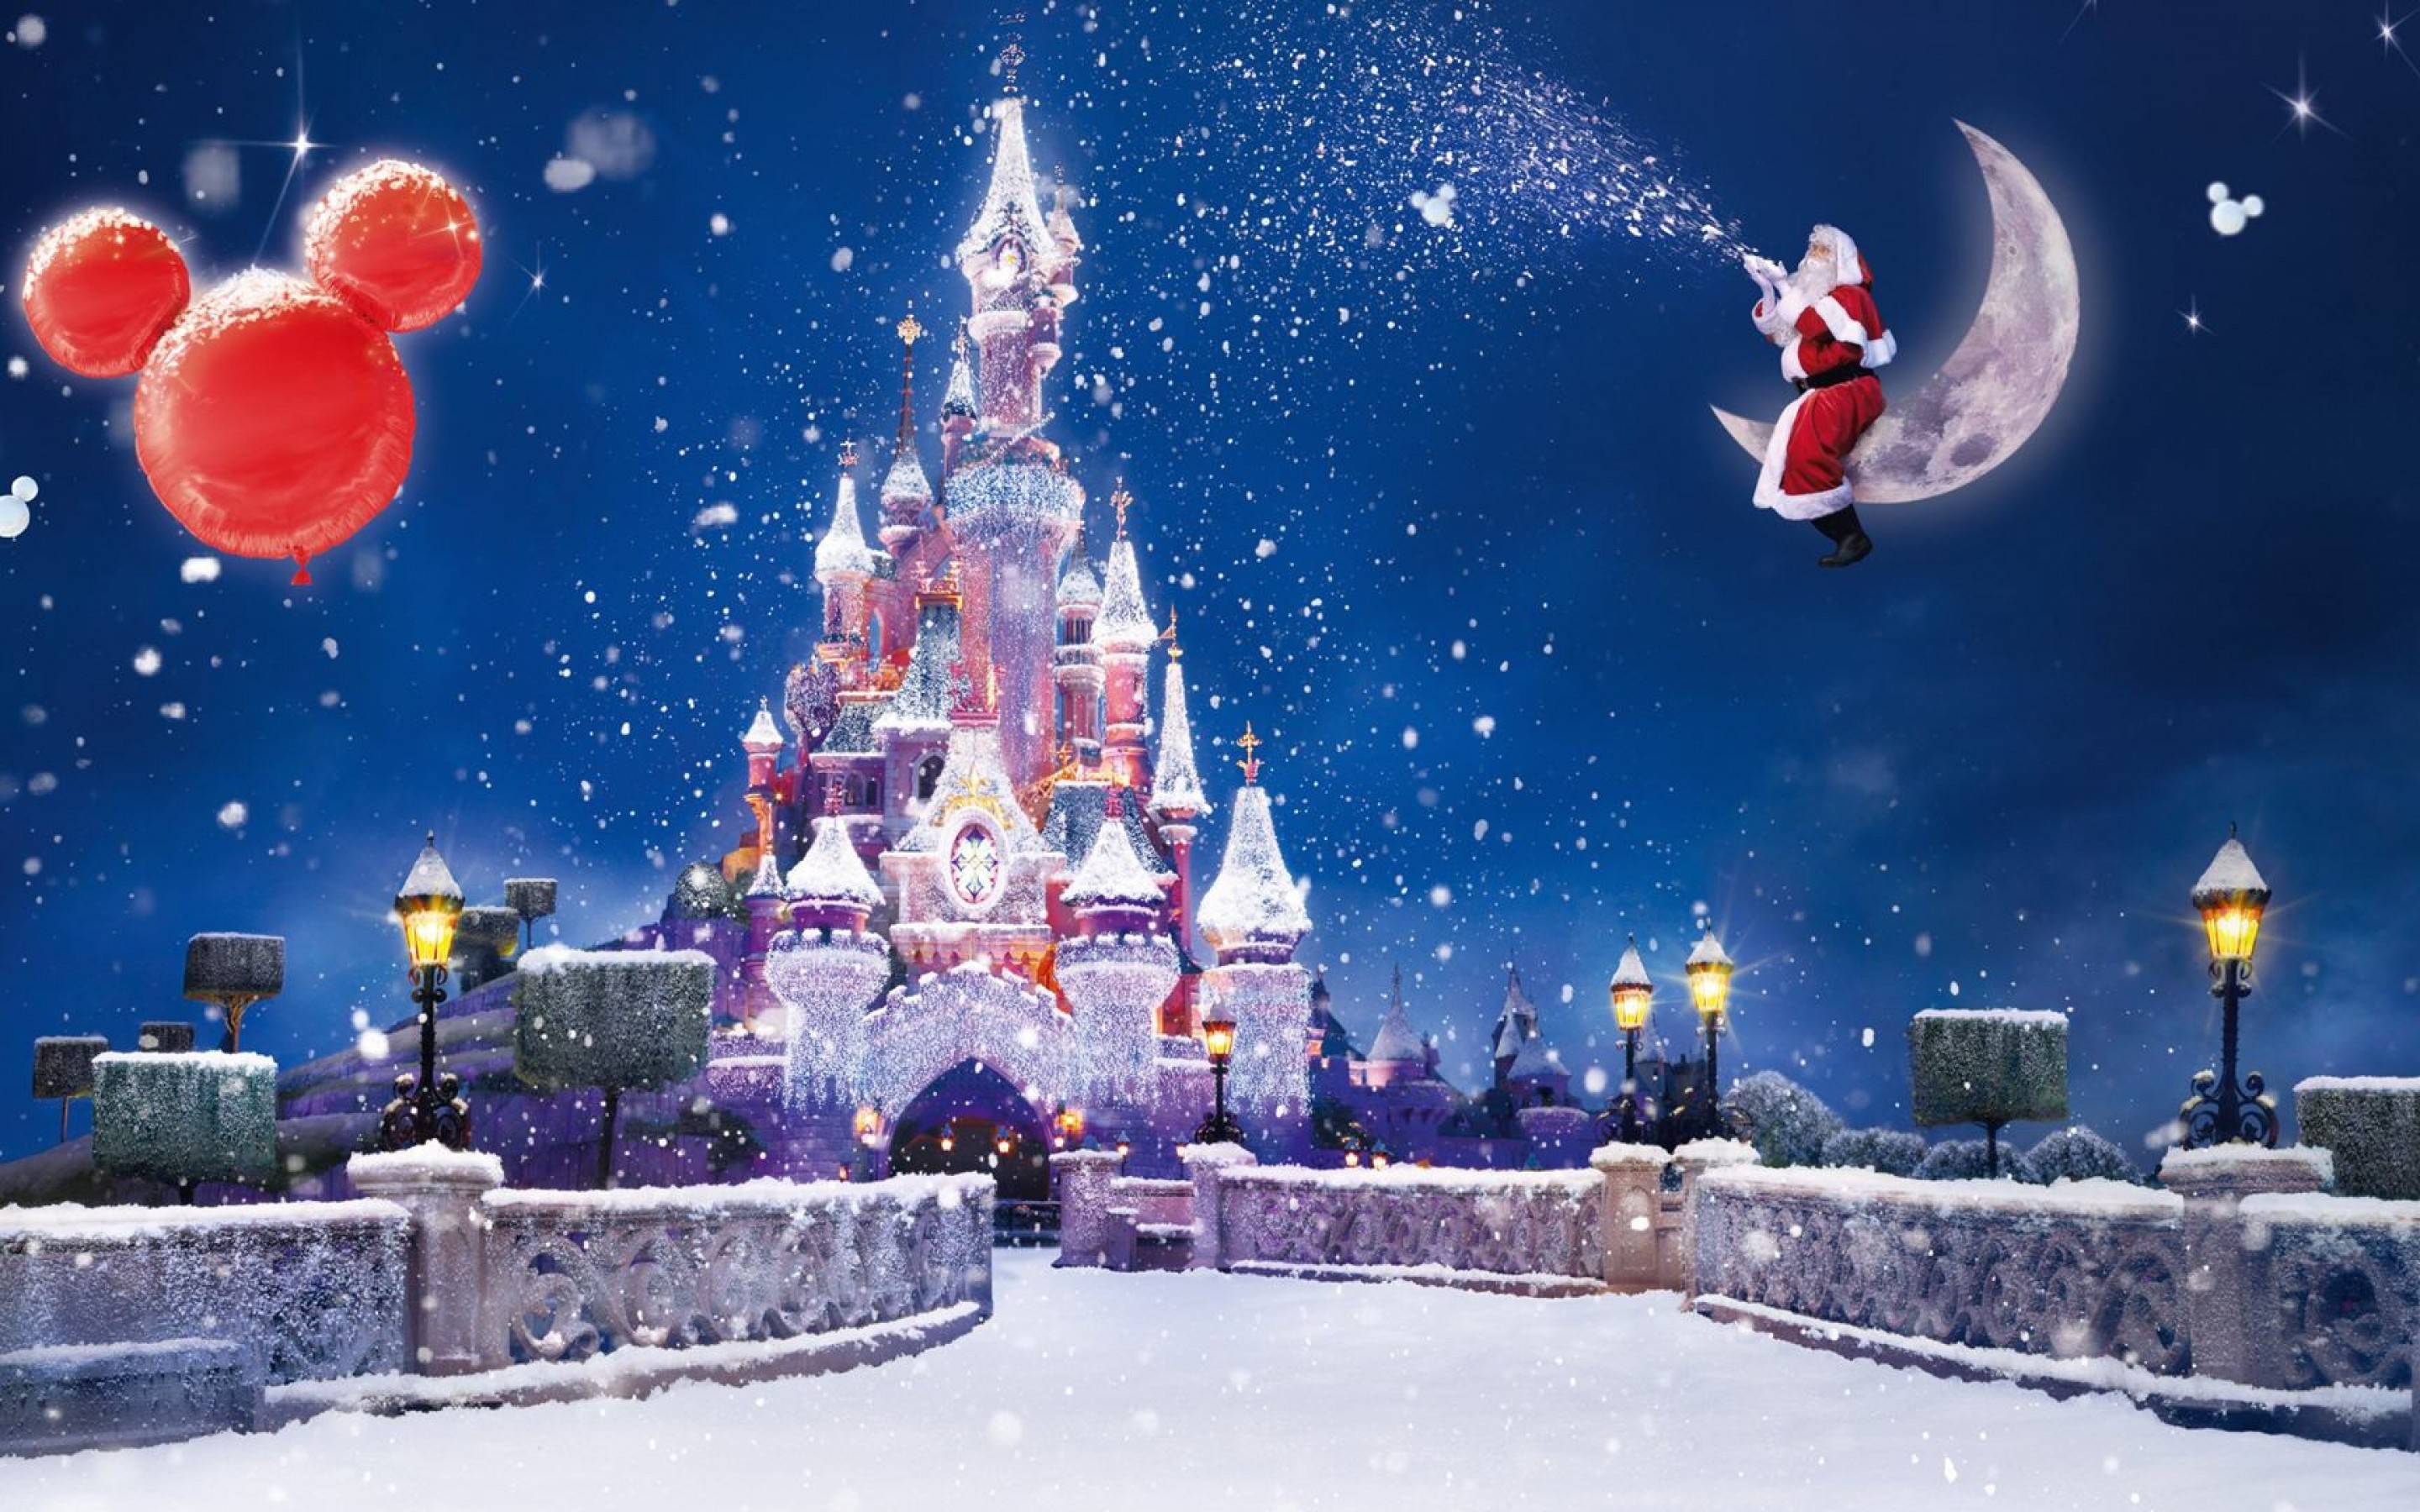 Thoả sức thể hiện tình yêu với những nhân vật Disney huyền thoại được thiết kế theo phong cách Giáng sinh độc đáo. Từ Elsa trong Frozen đến Minnie Mouse, bạn sẽ tìm thấy những hình ảnh đặc biệt thể hiện ý nghĩa nghỉ đông và tình cảm gia đình.